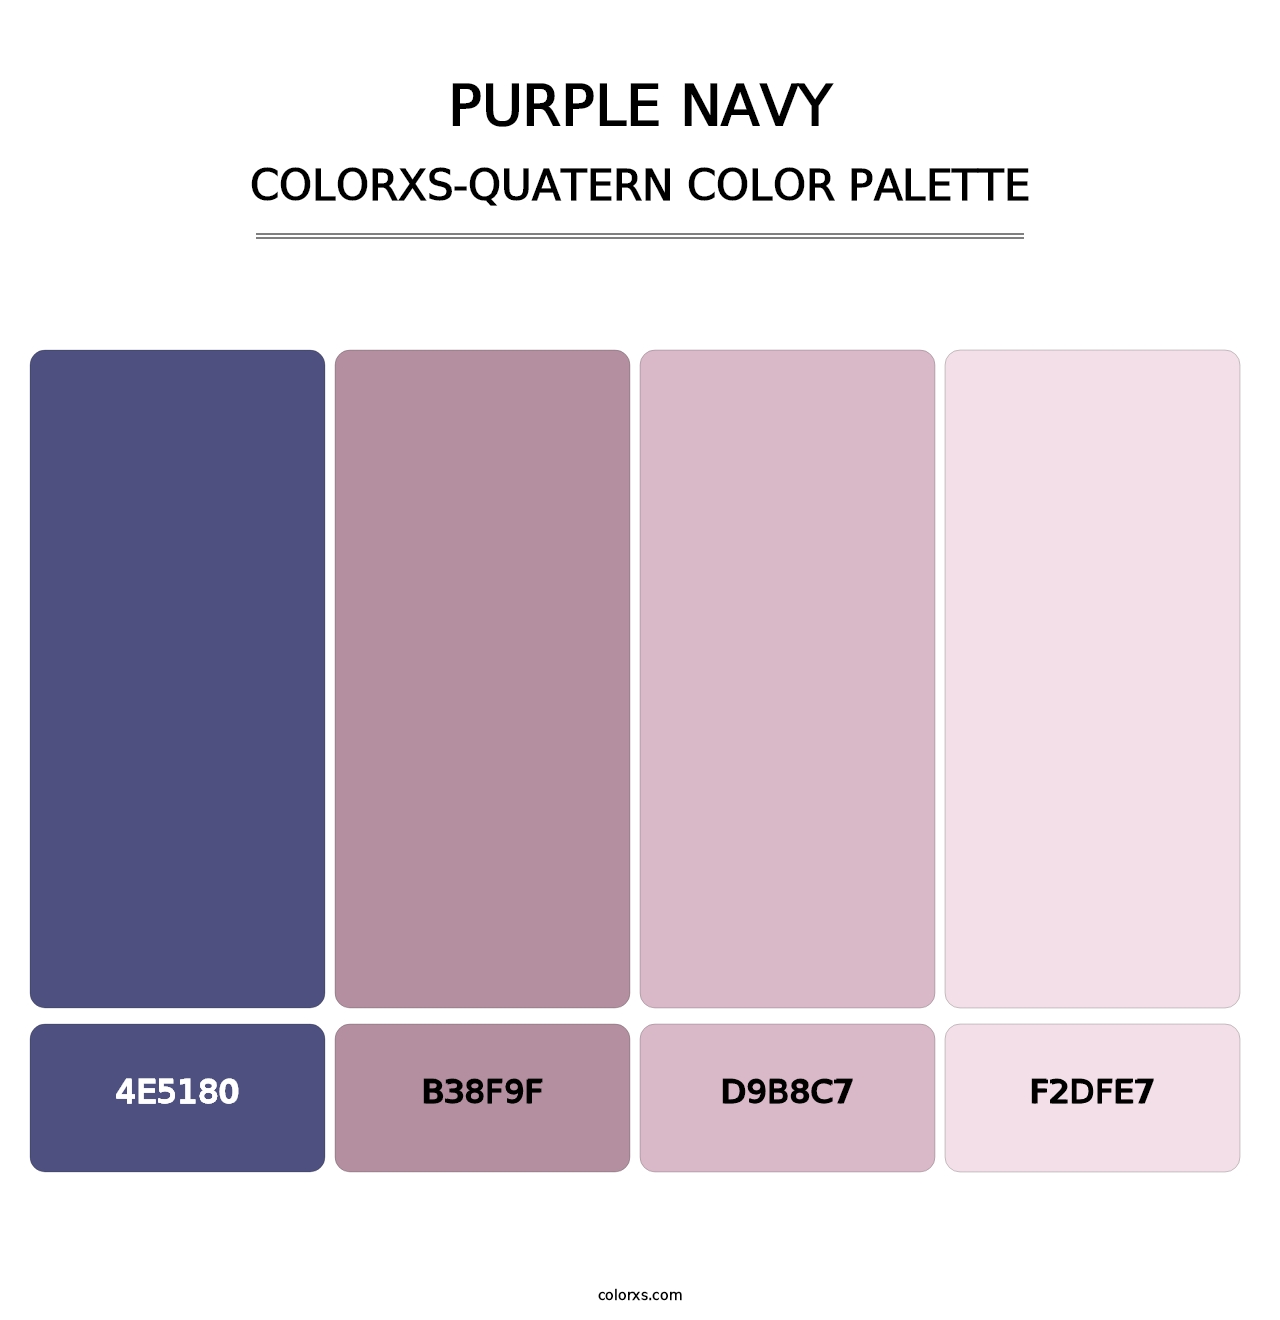 Purple Navy - Colorxs Quatern Palette